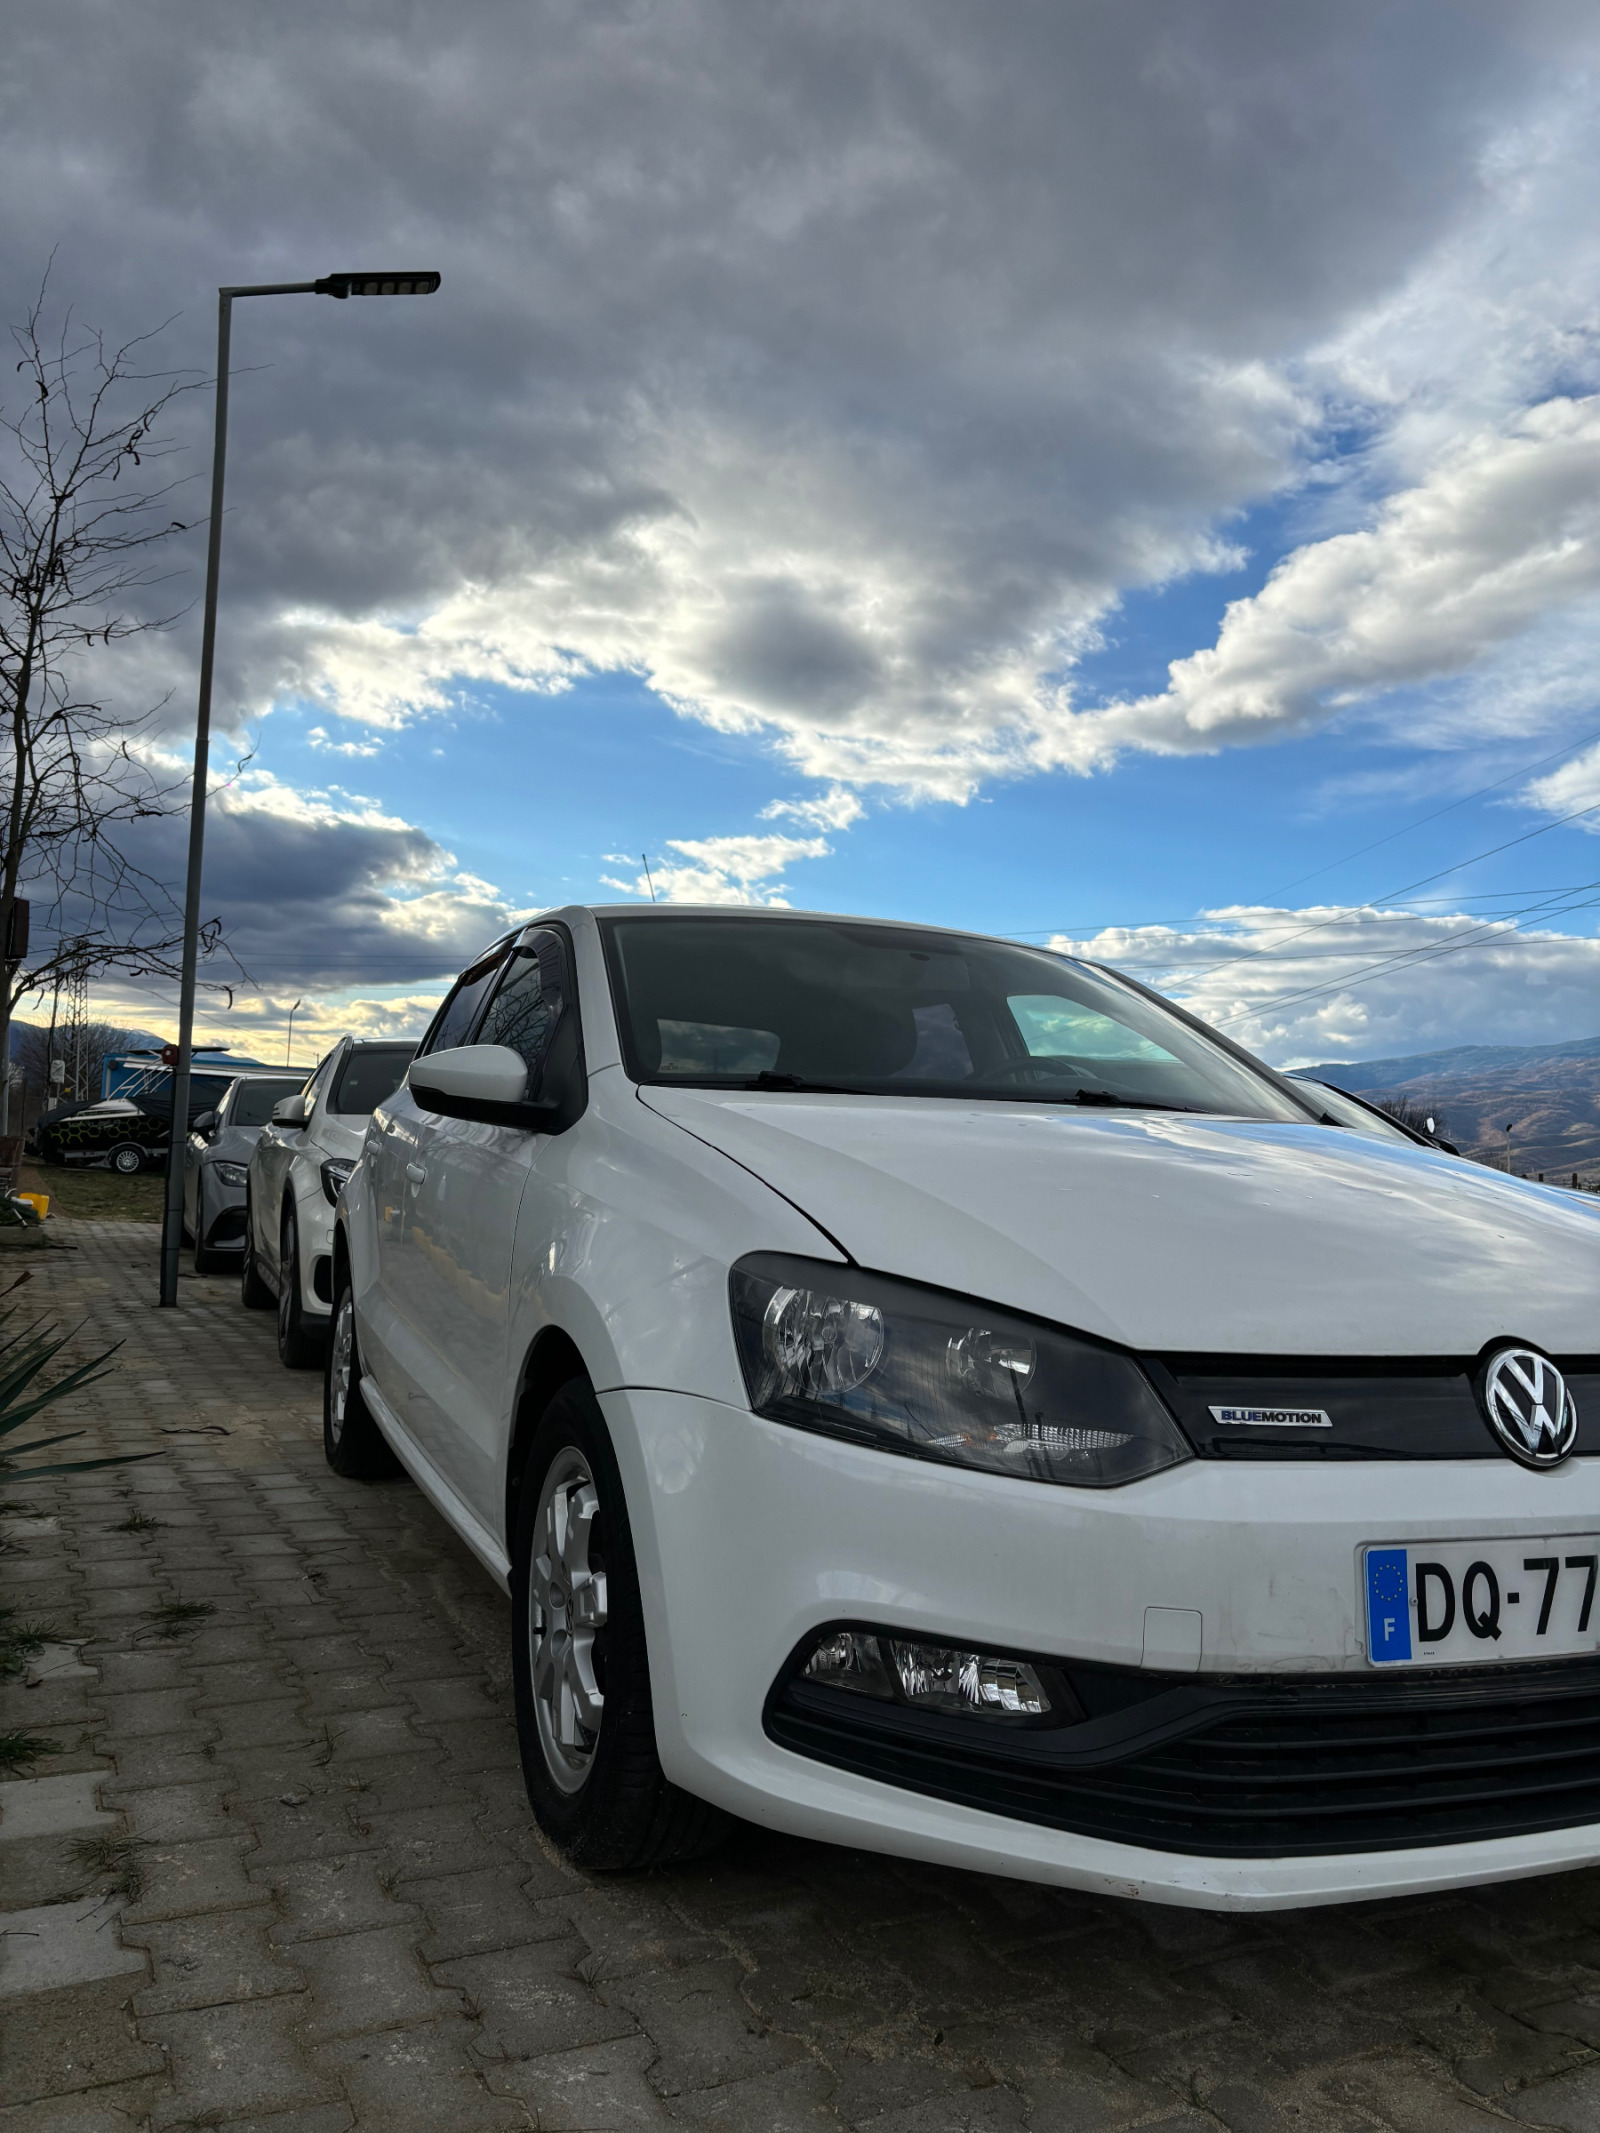 VW Polo 1.4 TDI BLUEMOTION - изображение 1